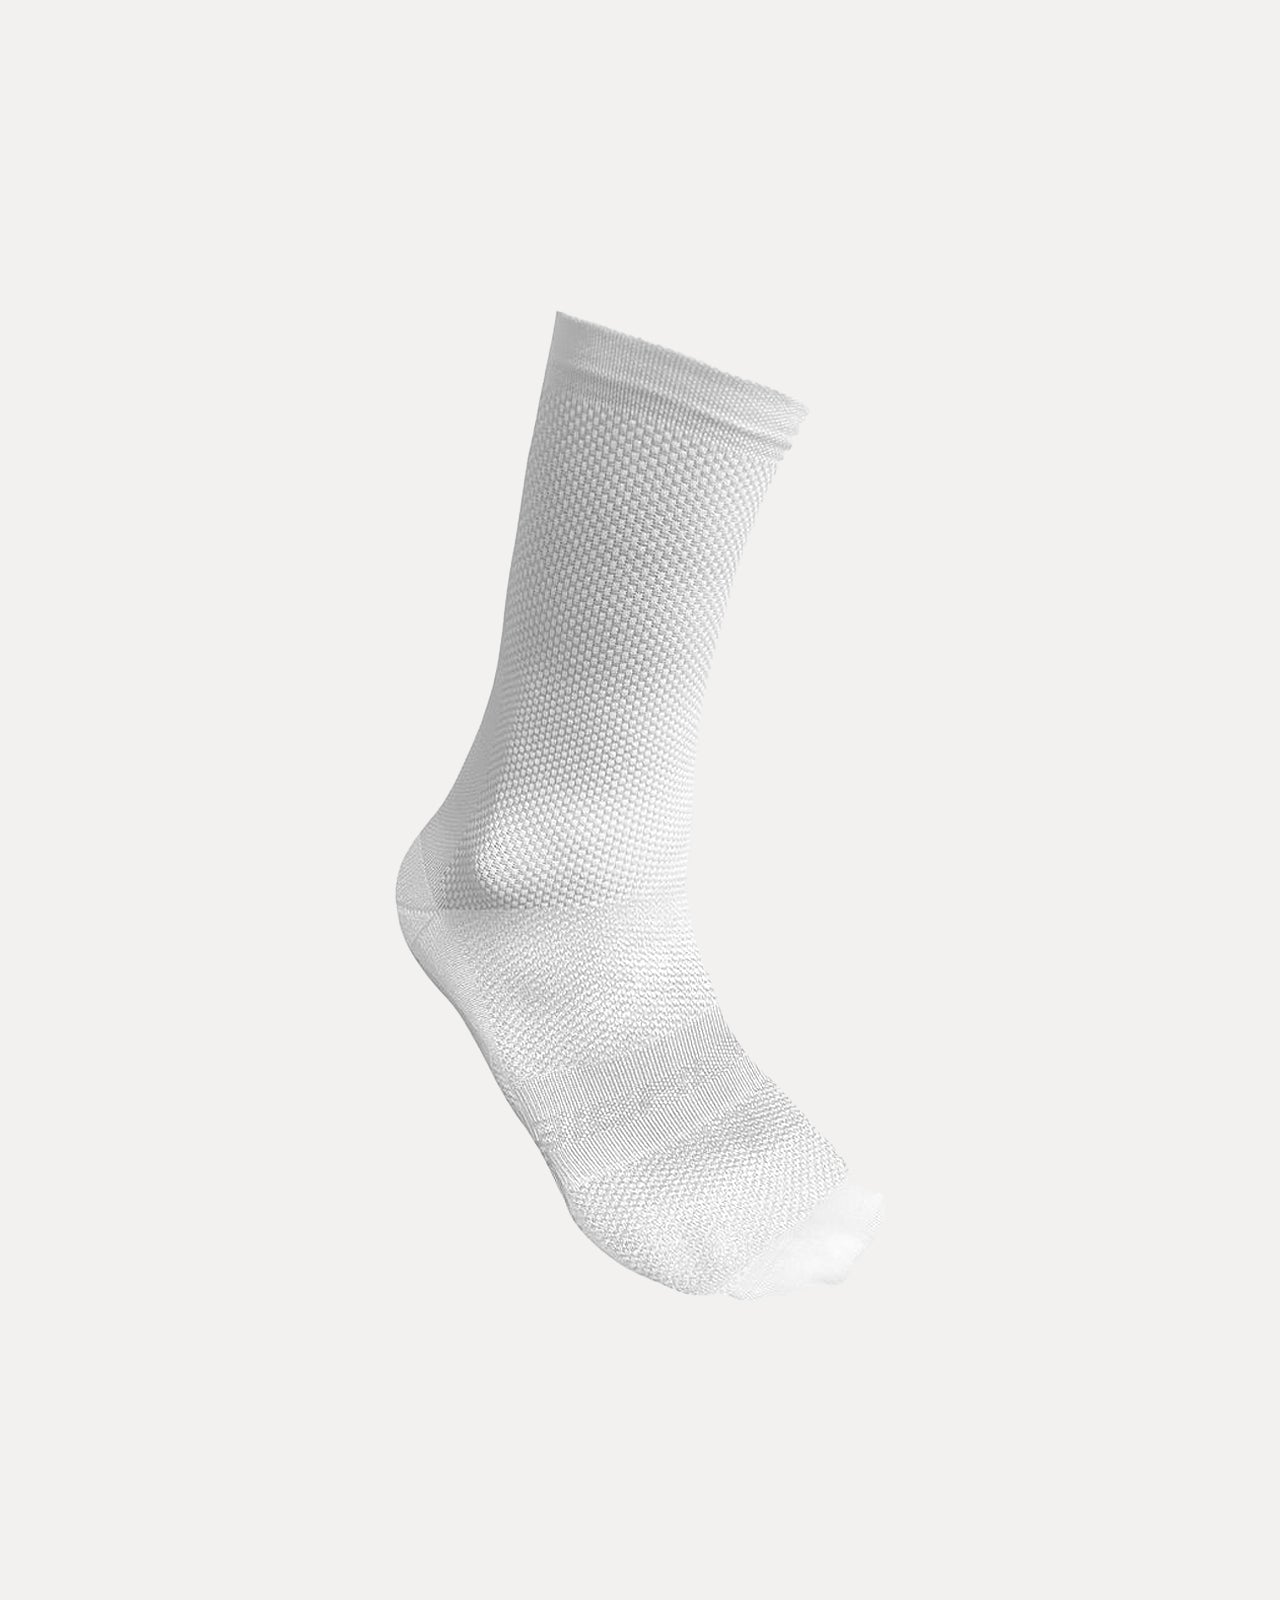 Statement Socks - White - Biehler